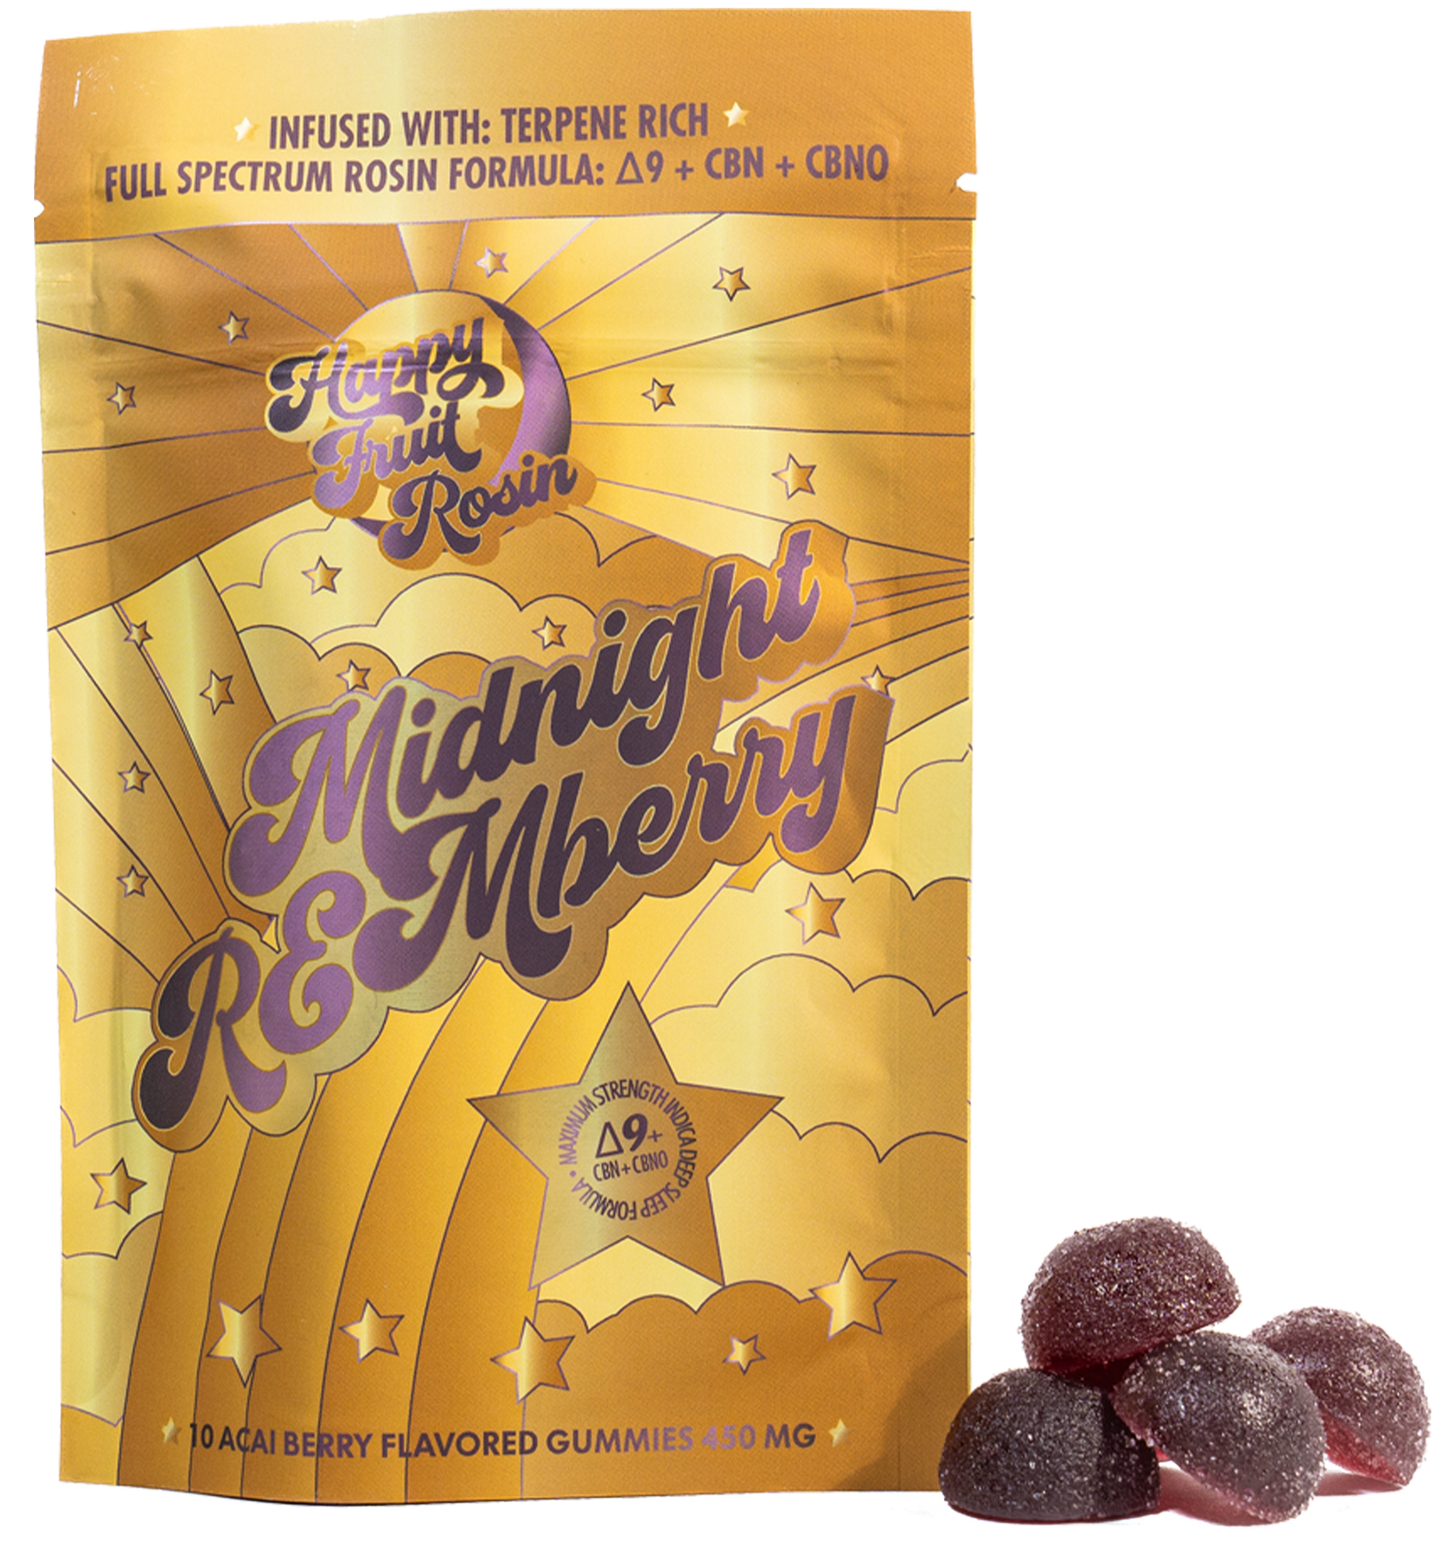 Midnight REMberry Gummies